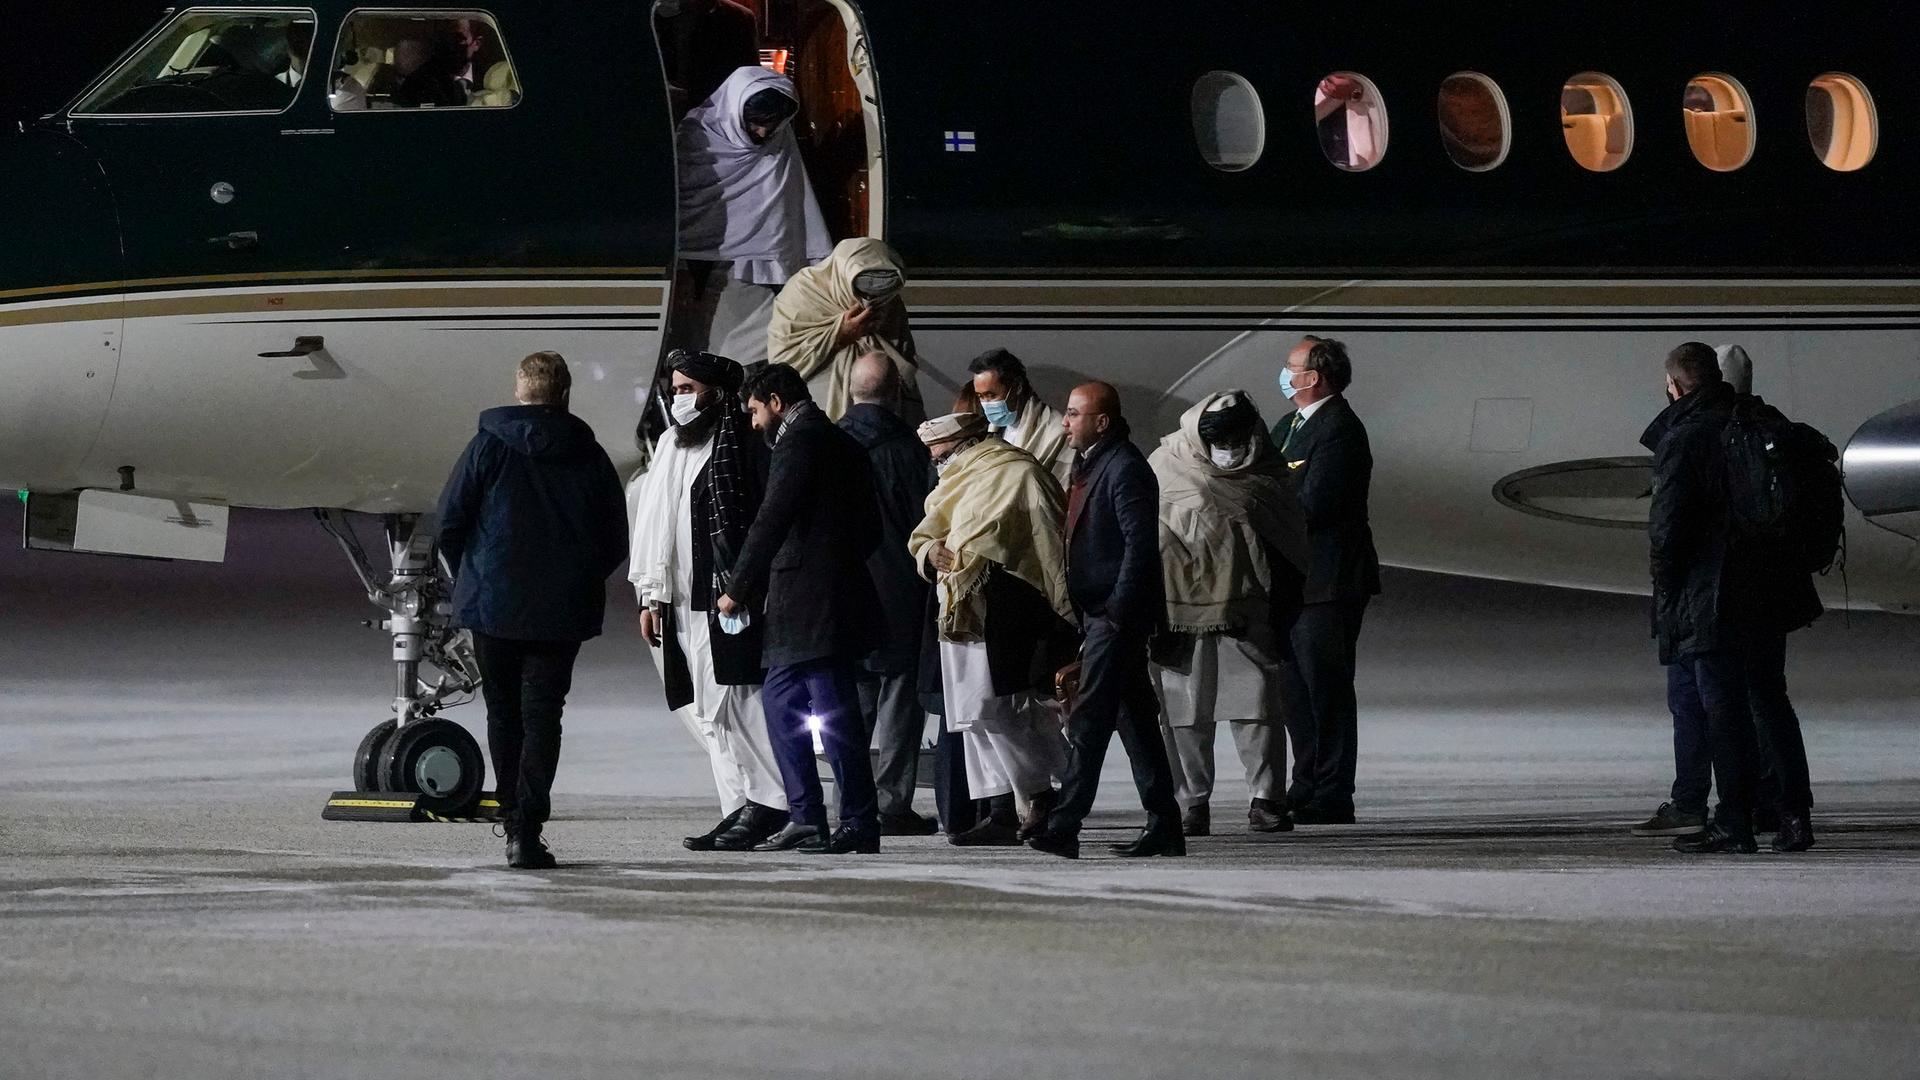 Vertreter der Taliban verlassen nach der Landung am Flughafen Oslo ein Flugzeug.